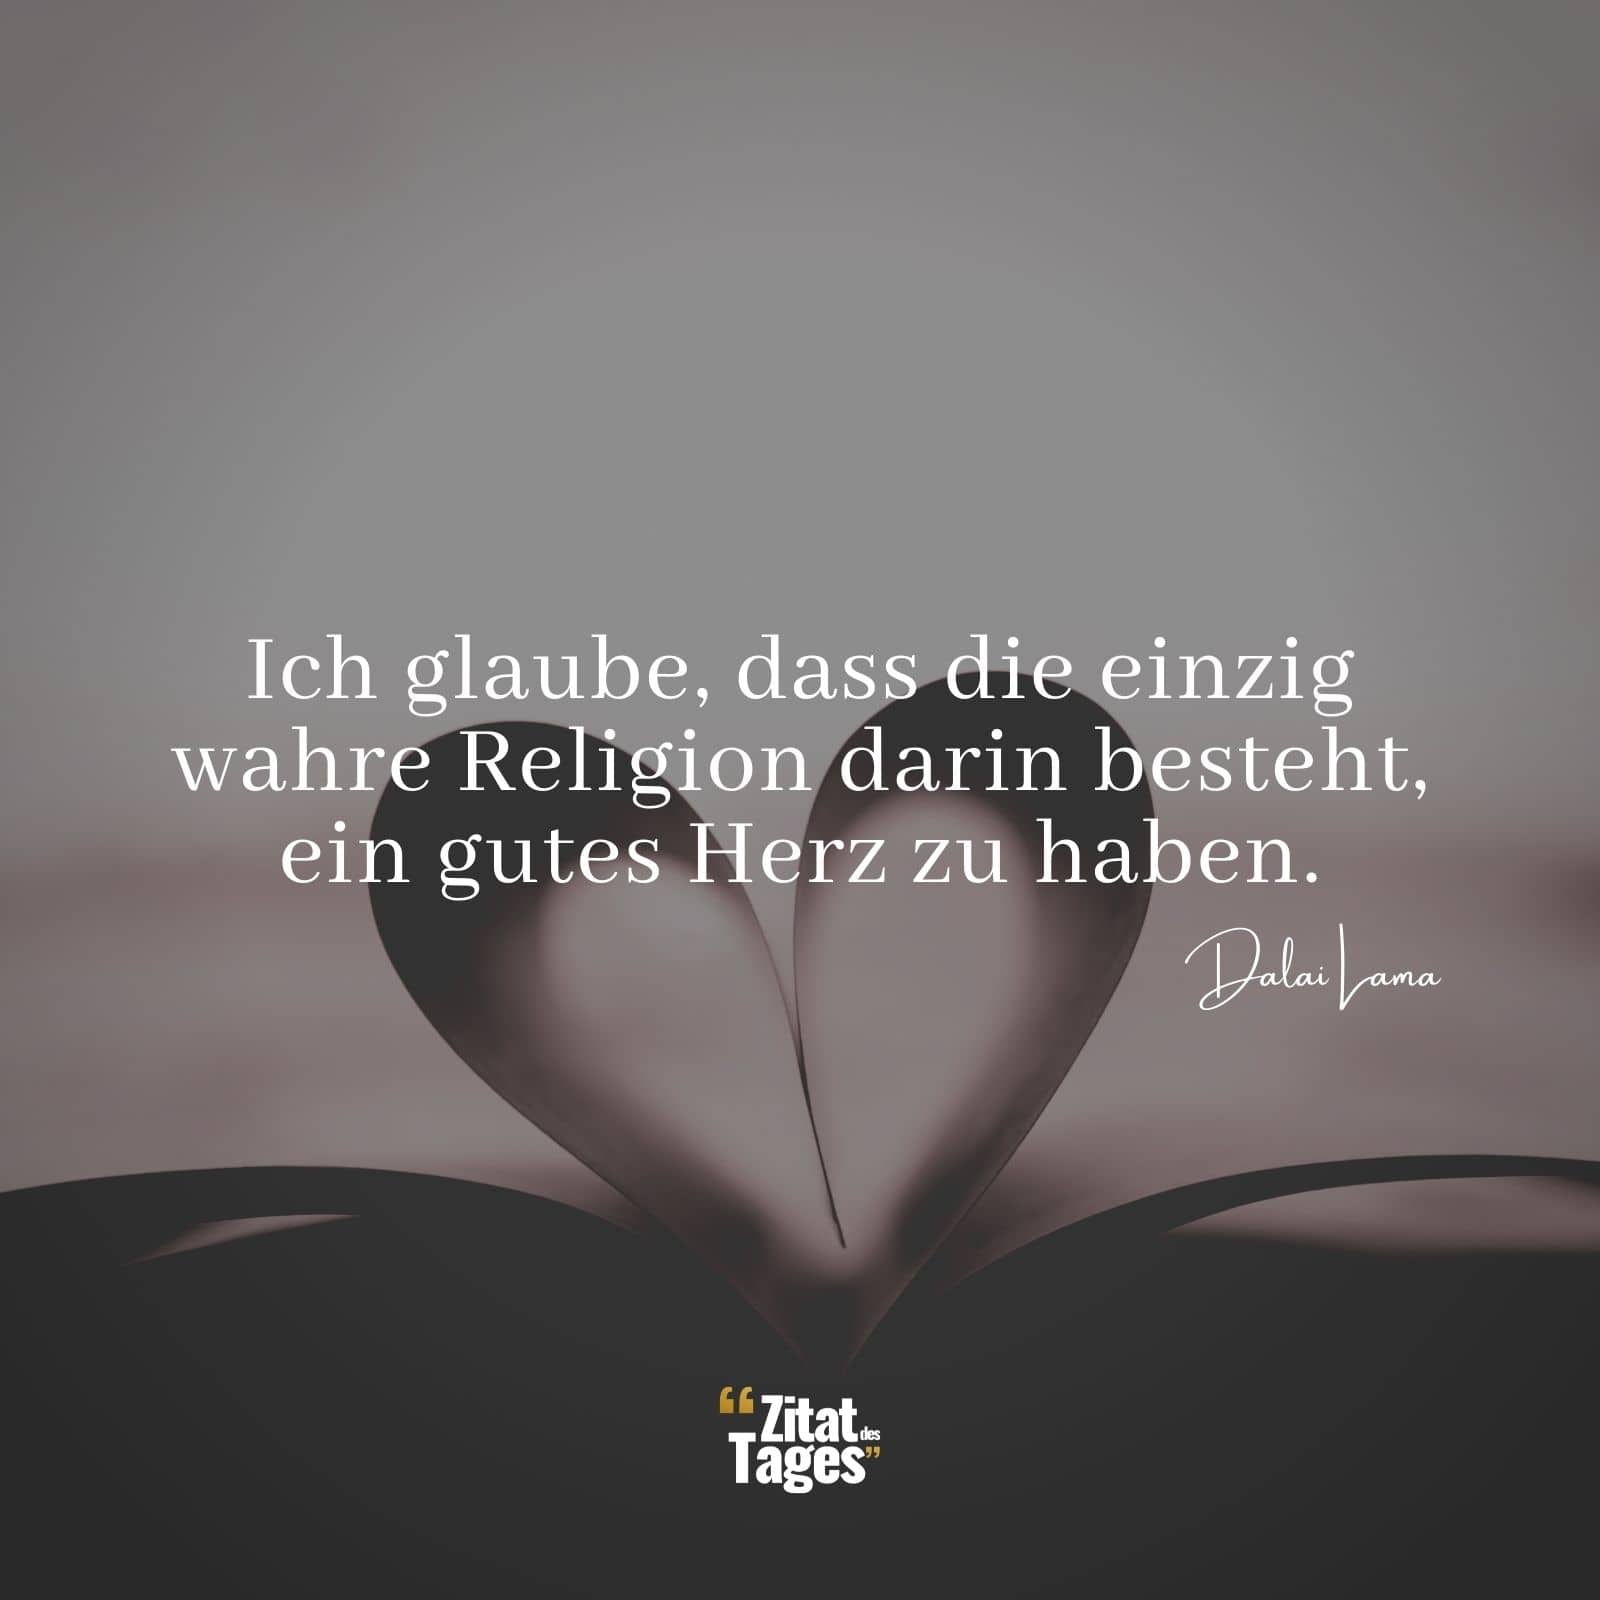 Ich glaube, dass die einzig wahre Religion darin besteht, ein gutes Herz zu haben. - Dalai Lama